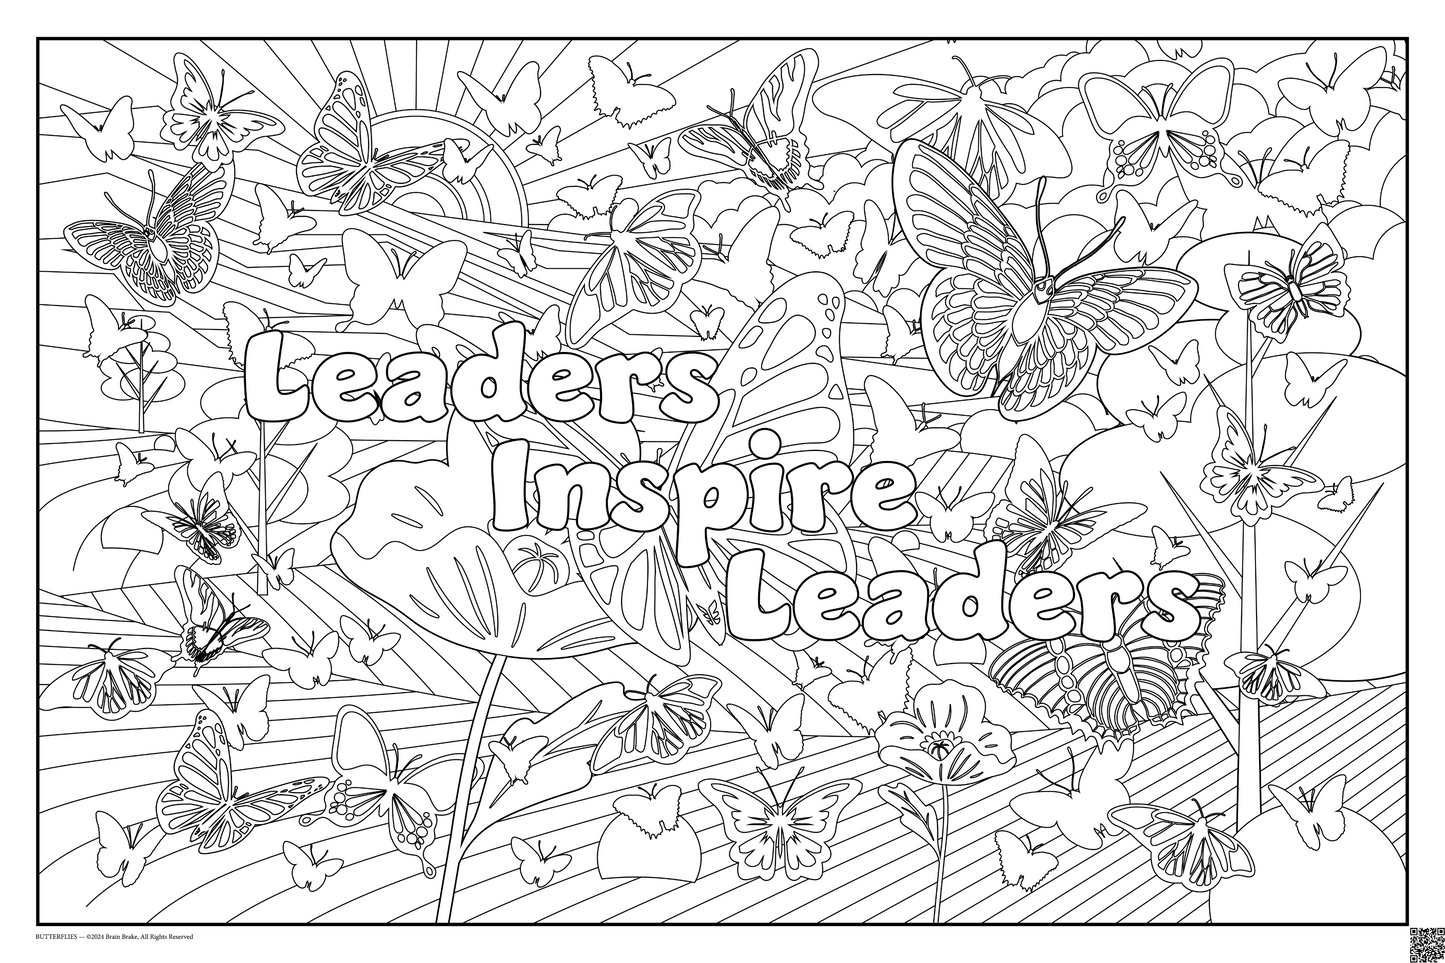 Build Community: Leaders Inspire Leaders